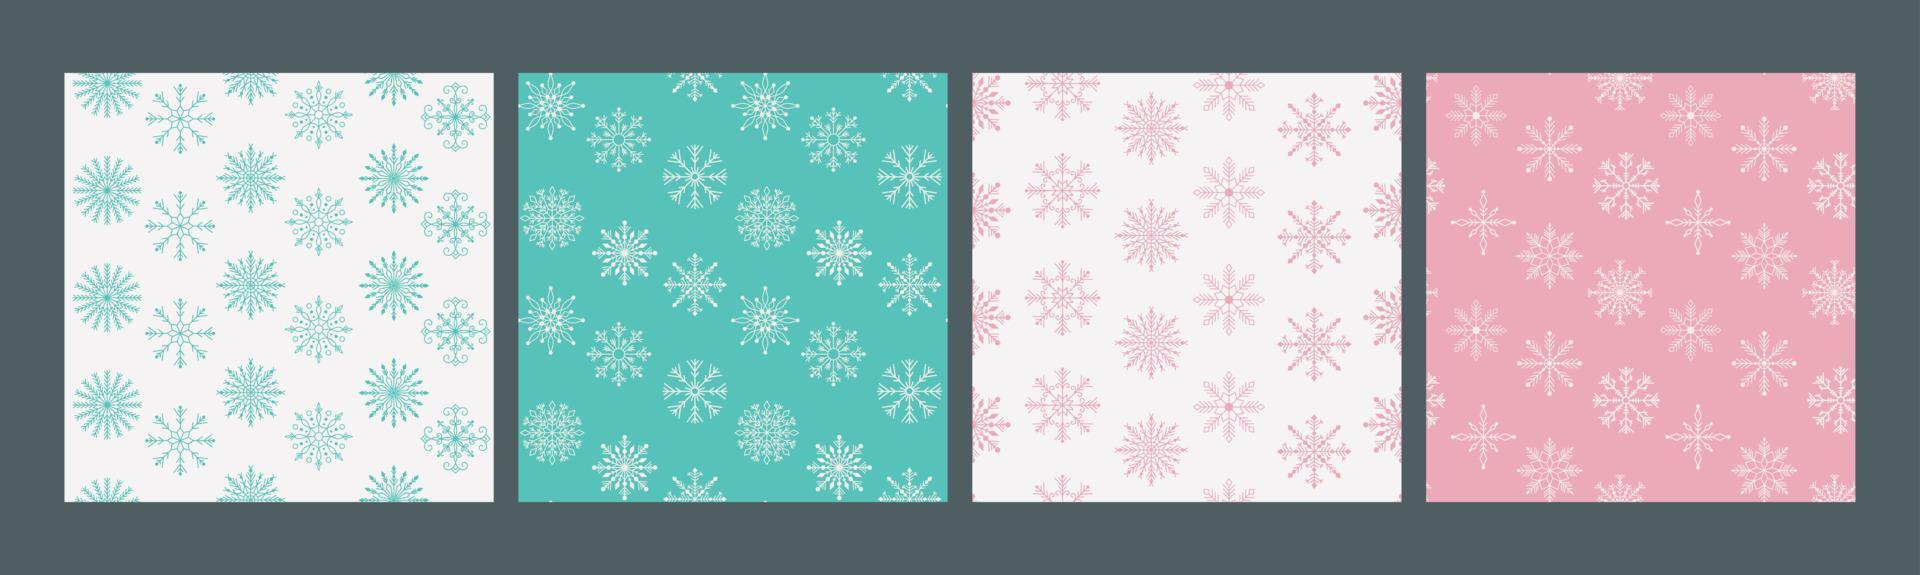 glad jul och Lycklig ny år uppsättning av sömlös mönster med olika snöflingor. modern hand dra illustrationer. färgrik samtida konst vektor